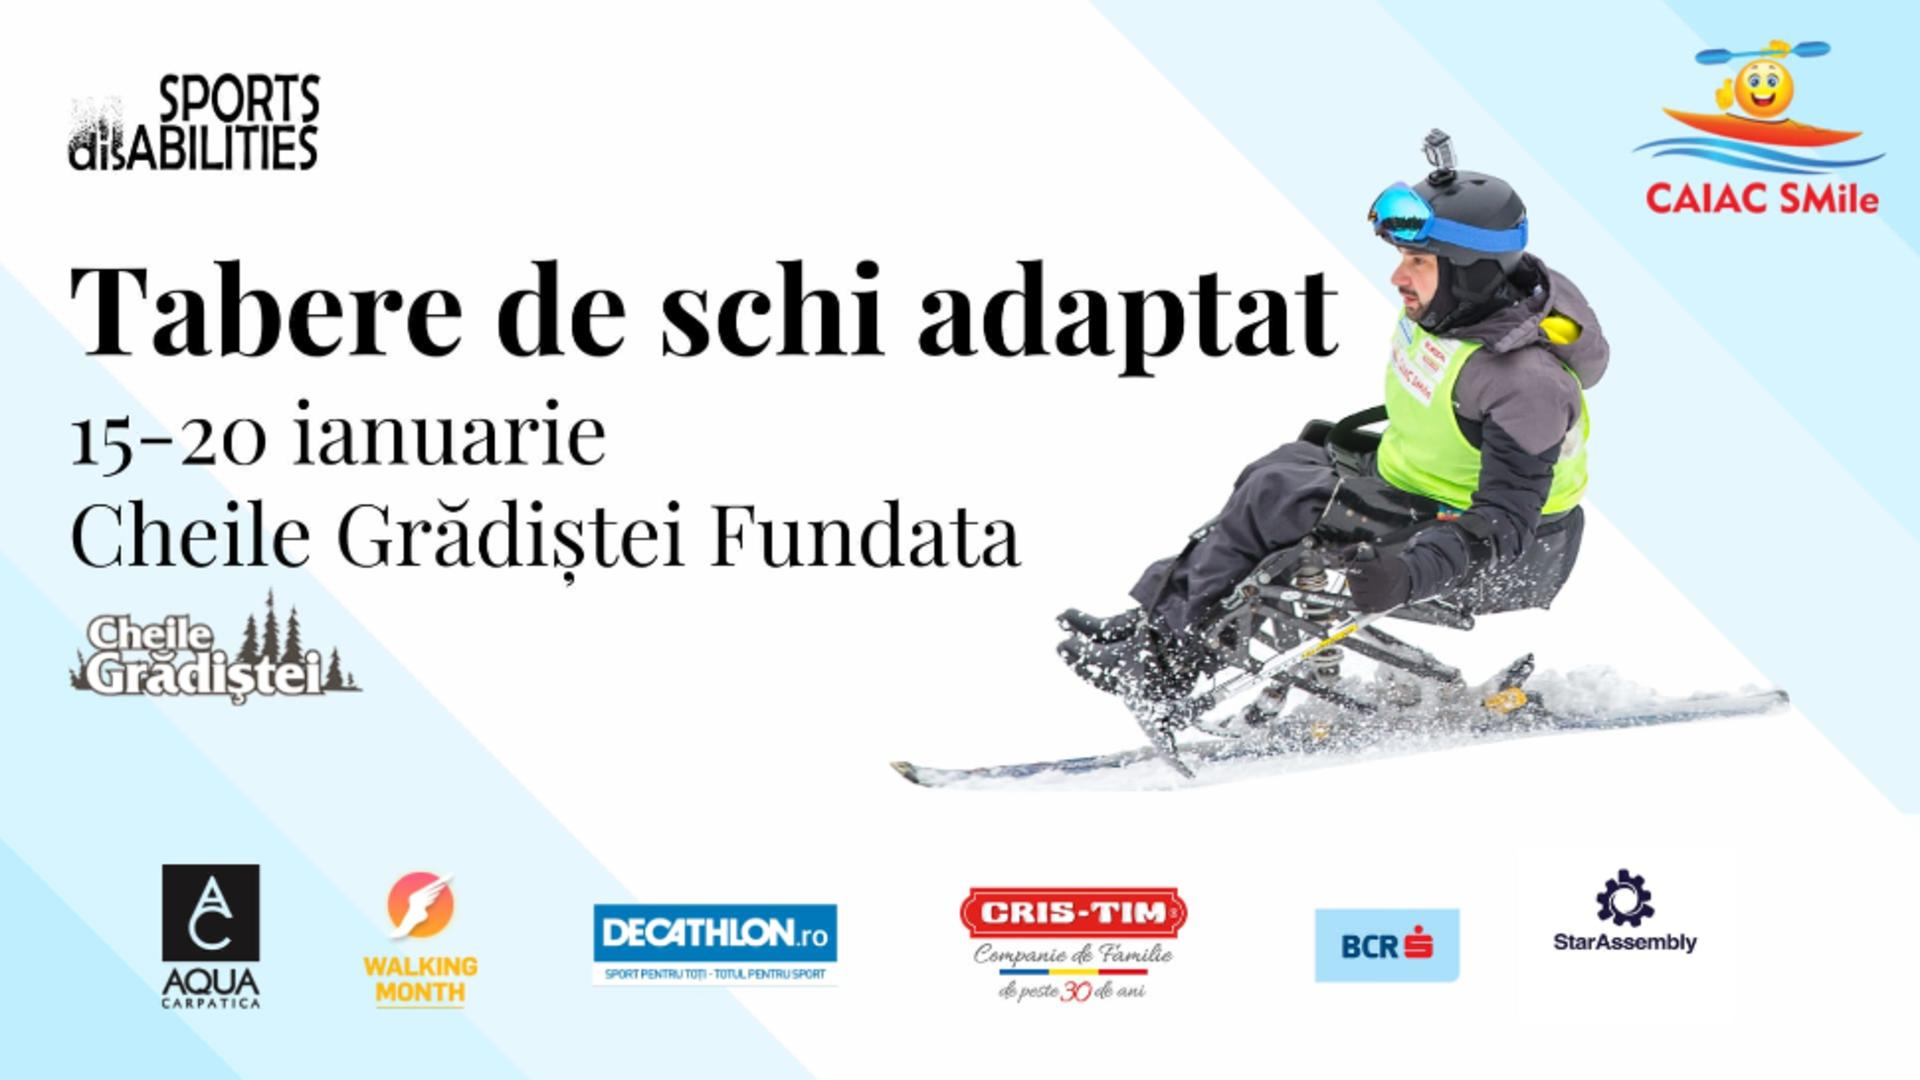 1.000 de persoane cu dizabilități vor schia pe pârtiile din România, în această iarnă, prin inițiativa Caiac SMile